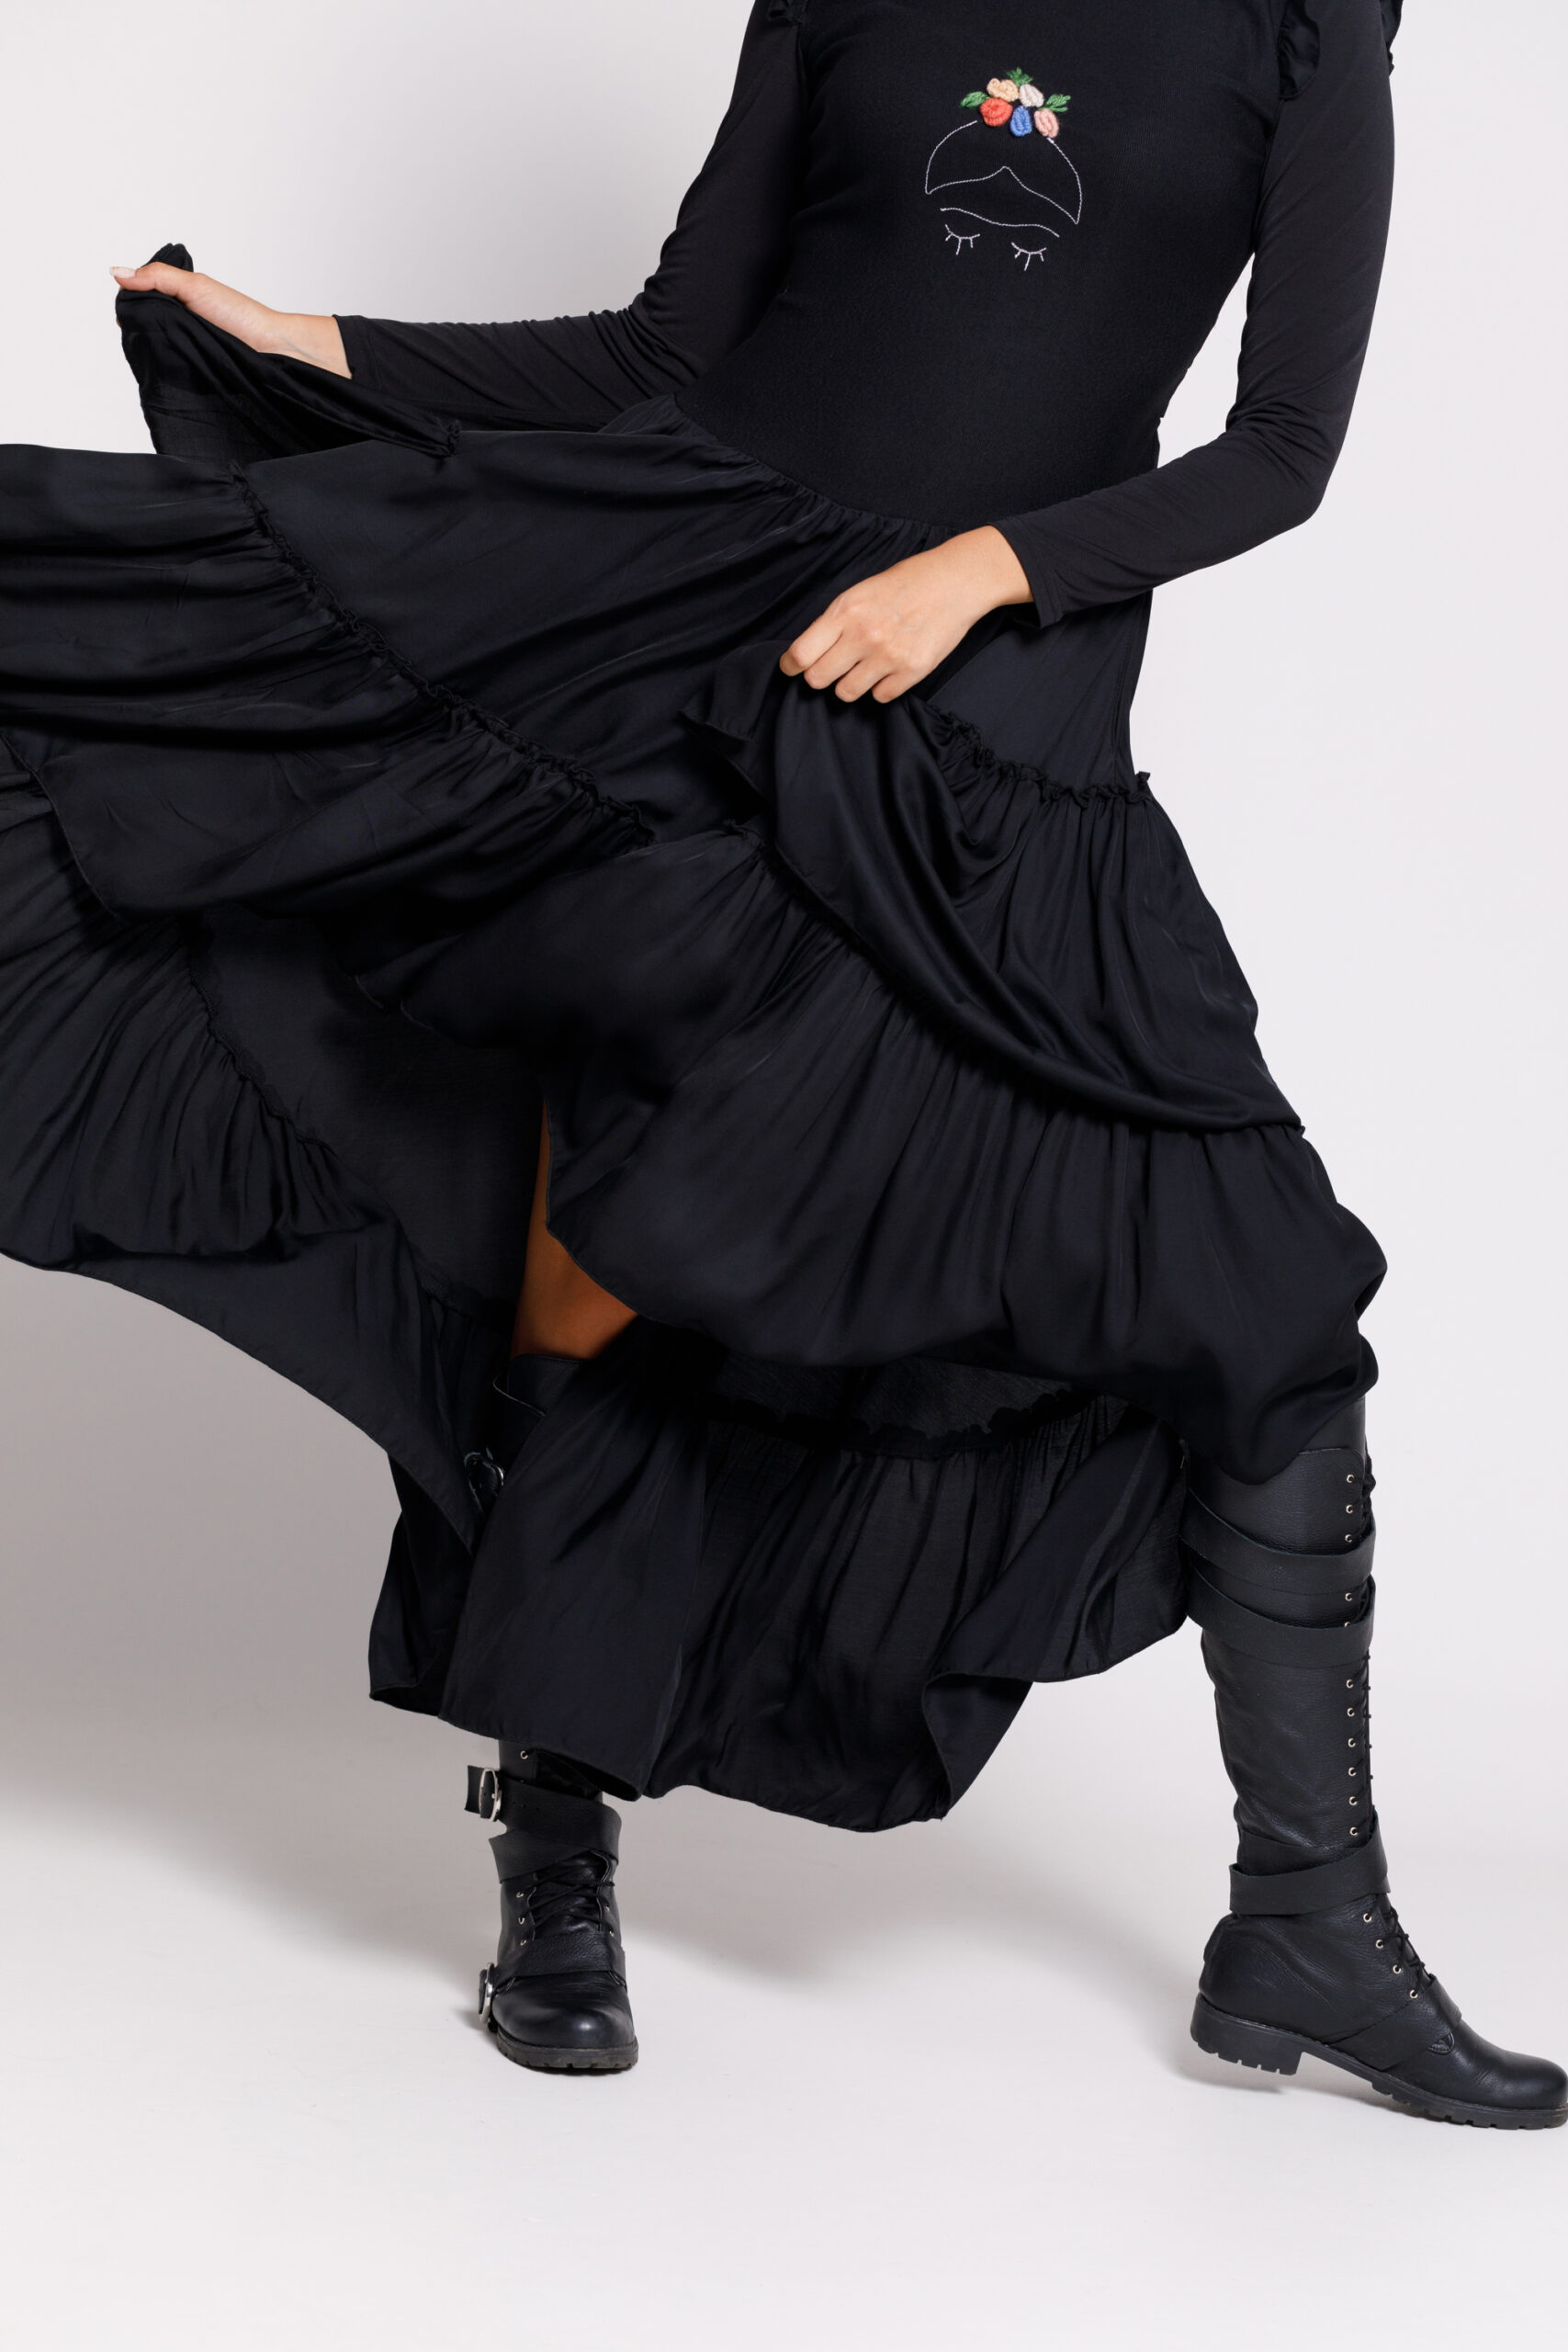 Rochie Valentino casual neagra cu lungime asimetrica. Materiale naturale, design unicat, cu broderie si aplicatii handmade